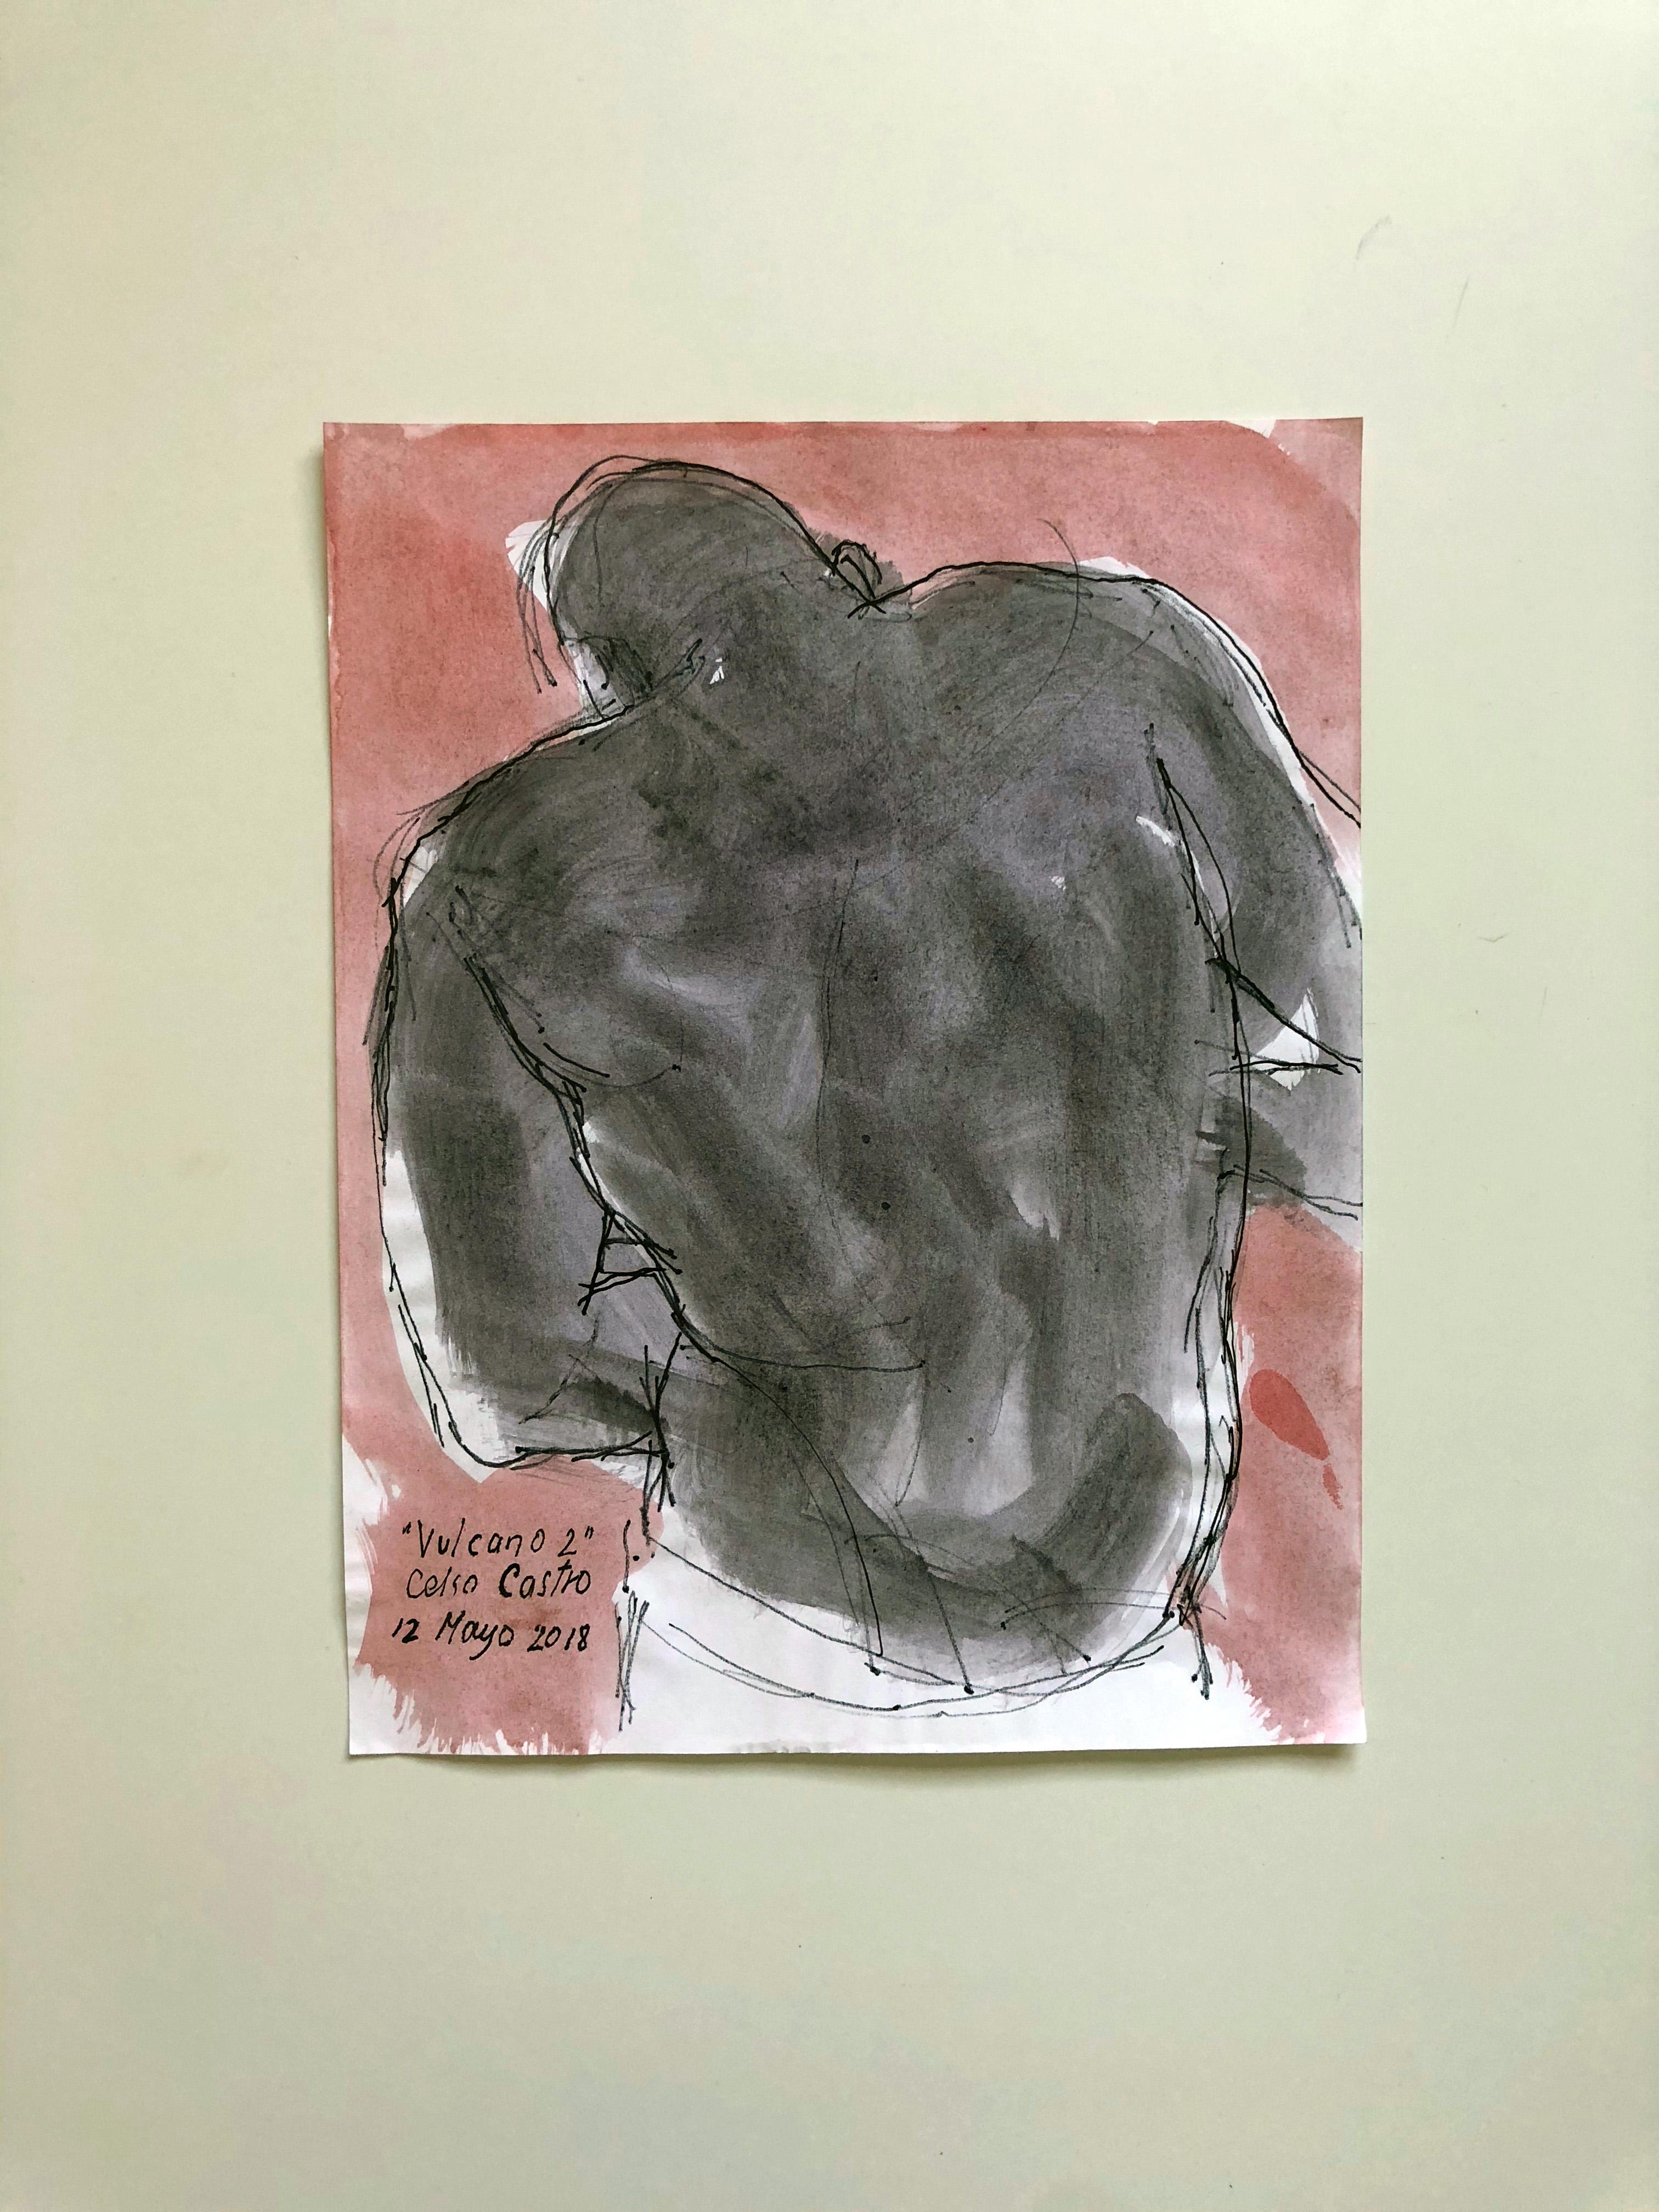 Celso José Castro Daza Figurative Art - "Vulcano 2", Watercolor and ink on archival paper, 2018